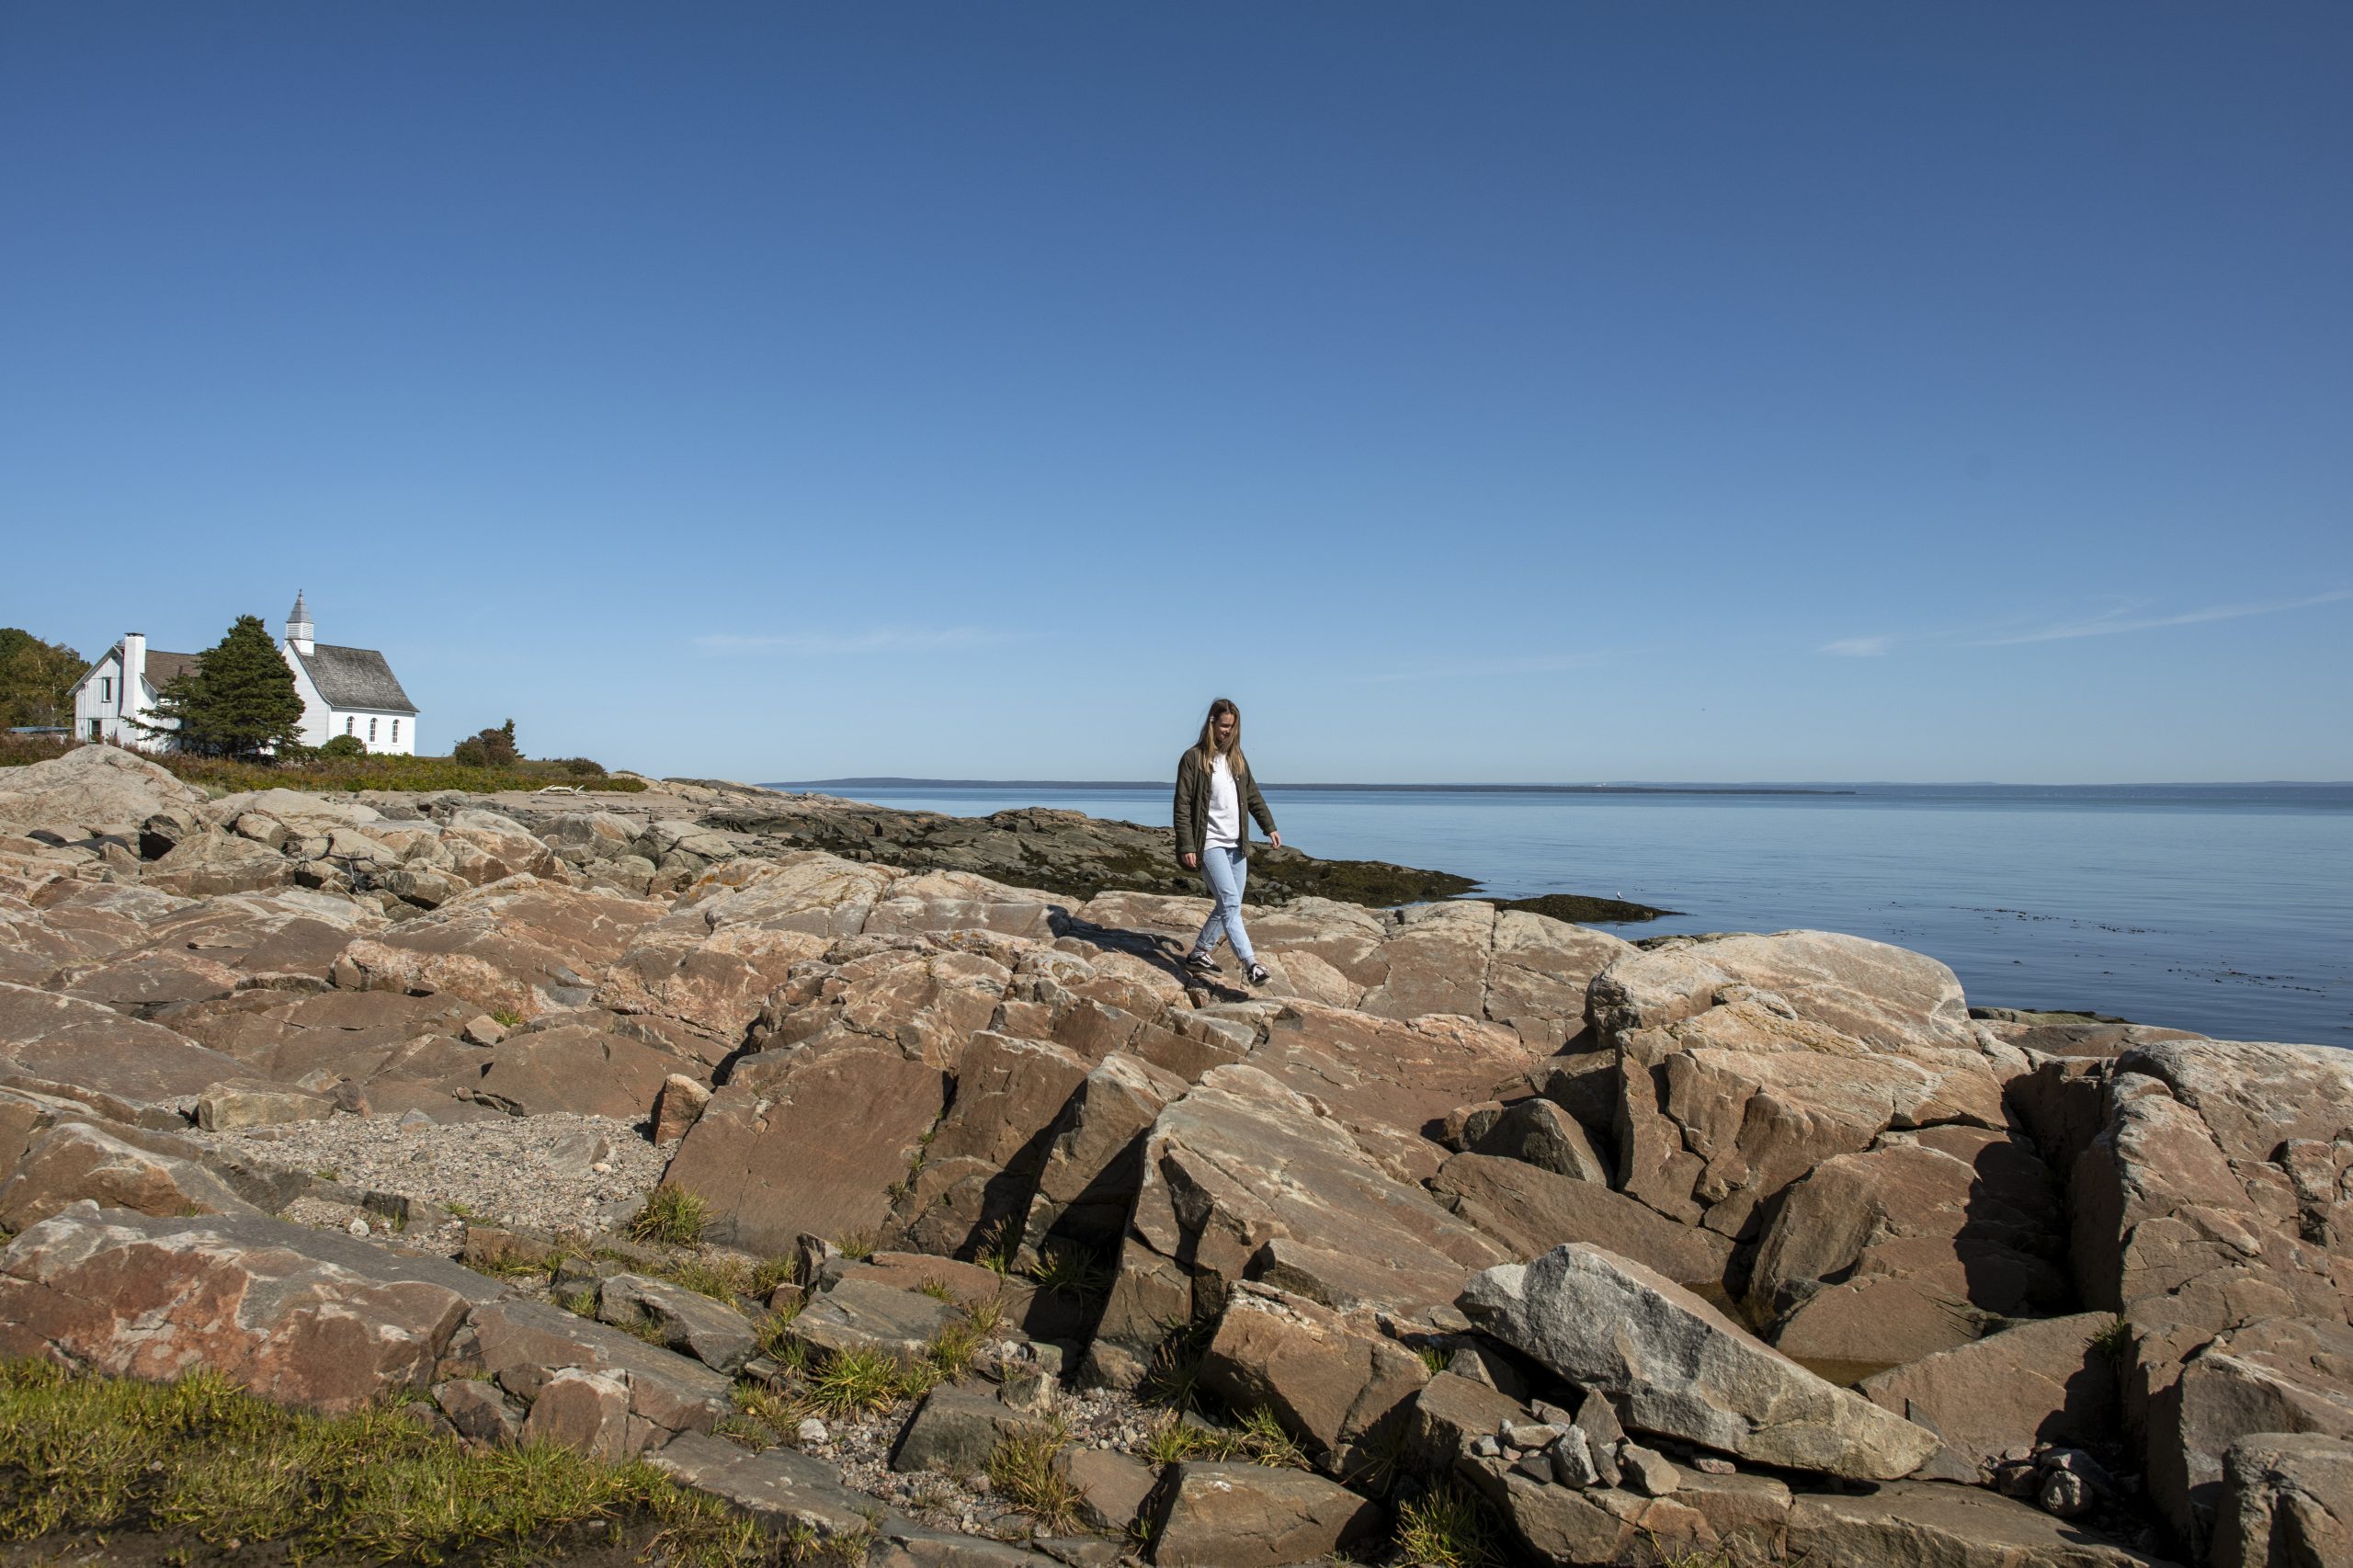 Femme marchant sur un rivage rocheux avec une petite église blanche en arrière-plan, près de la mer sous un ciel bleu.